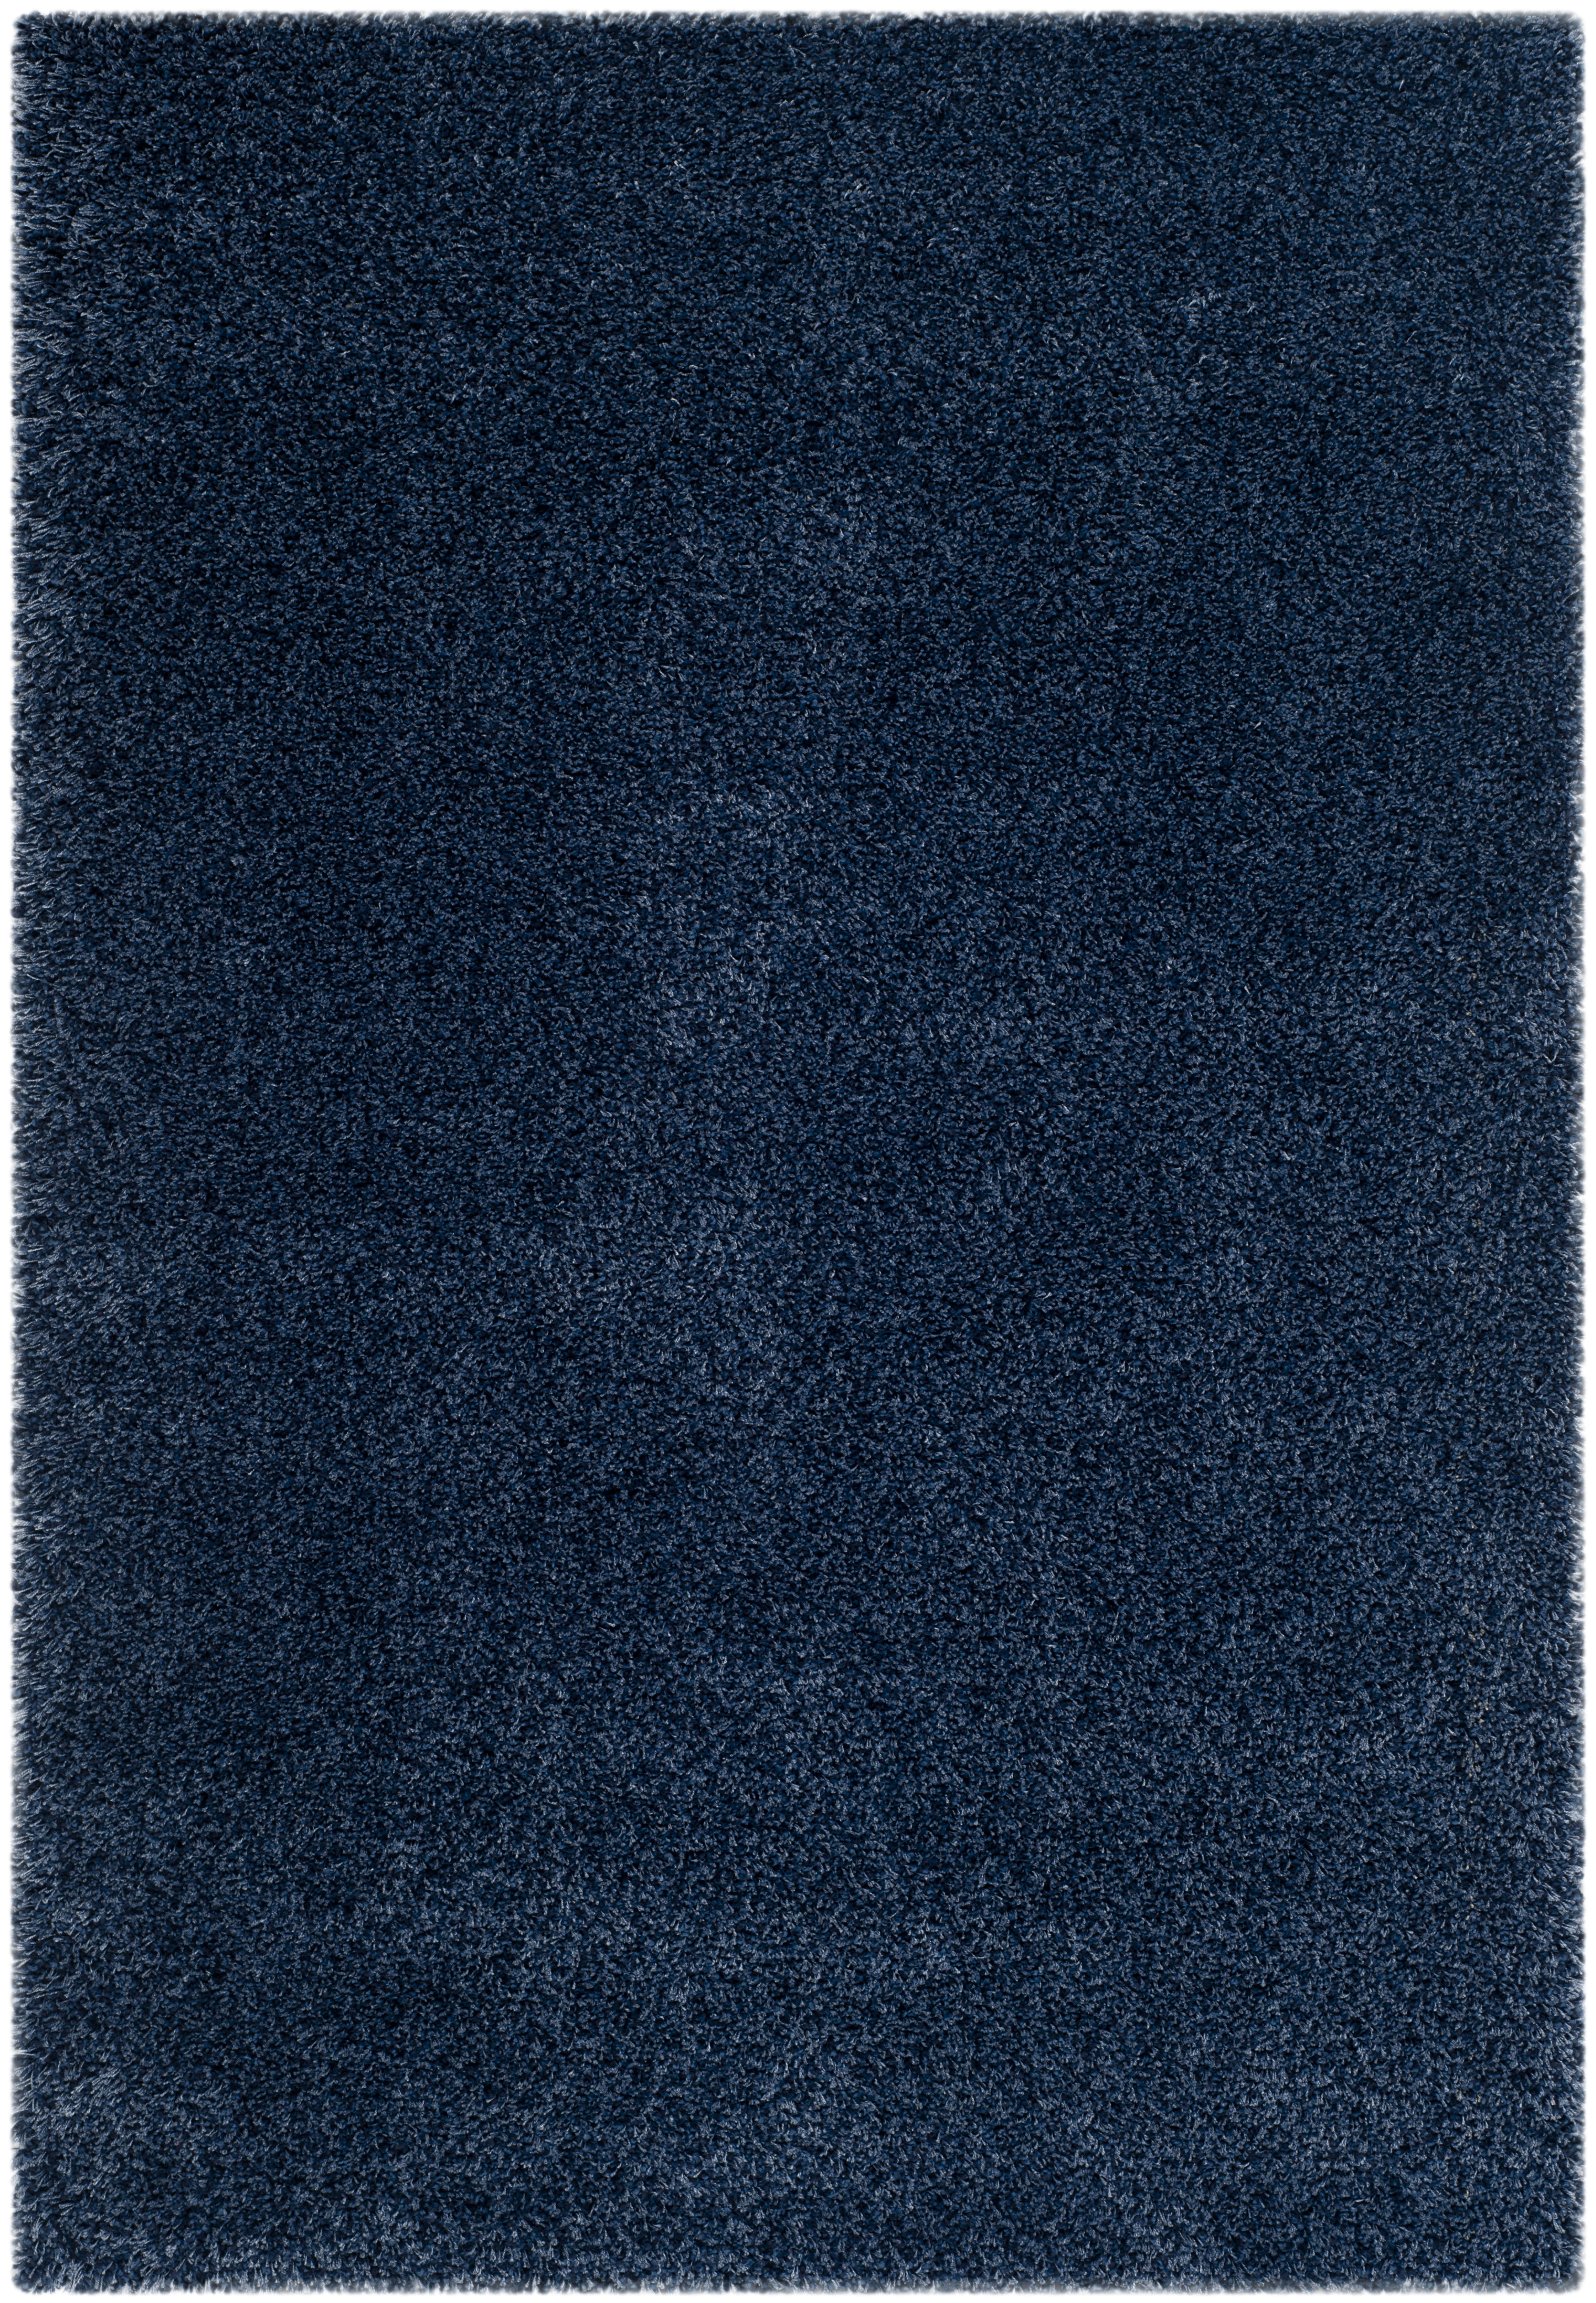 Tapis de salon interieur en bleu marine, 201 x 290 cm